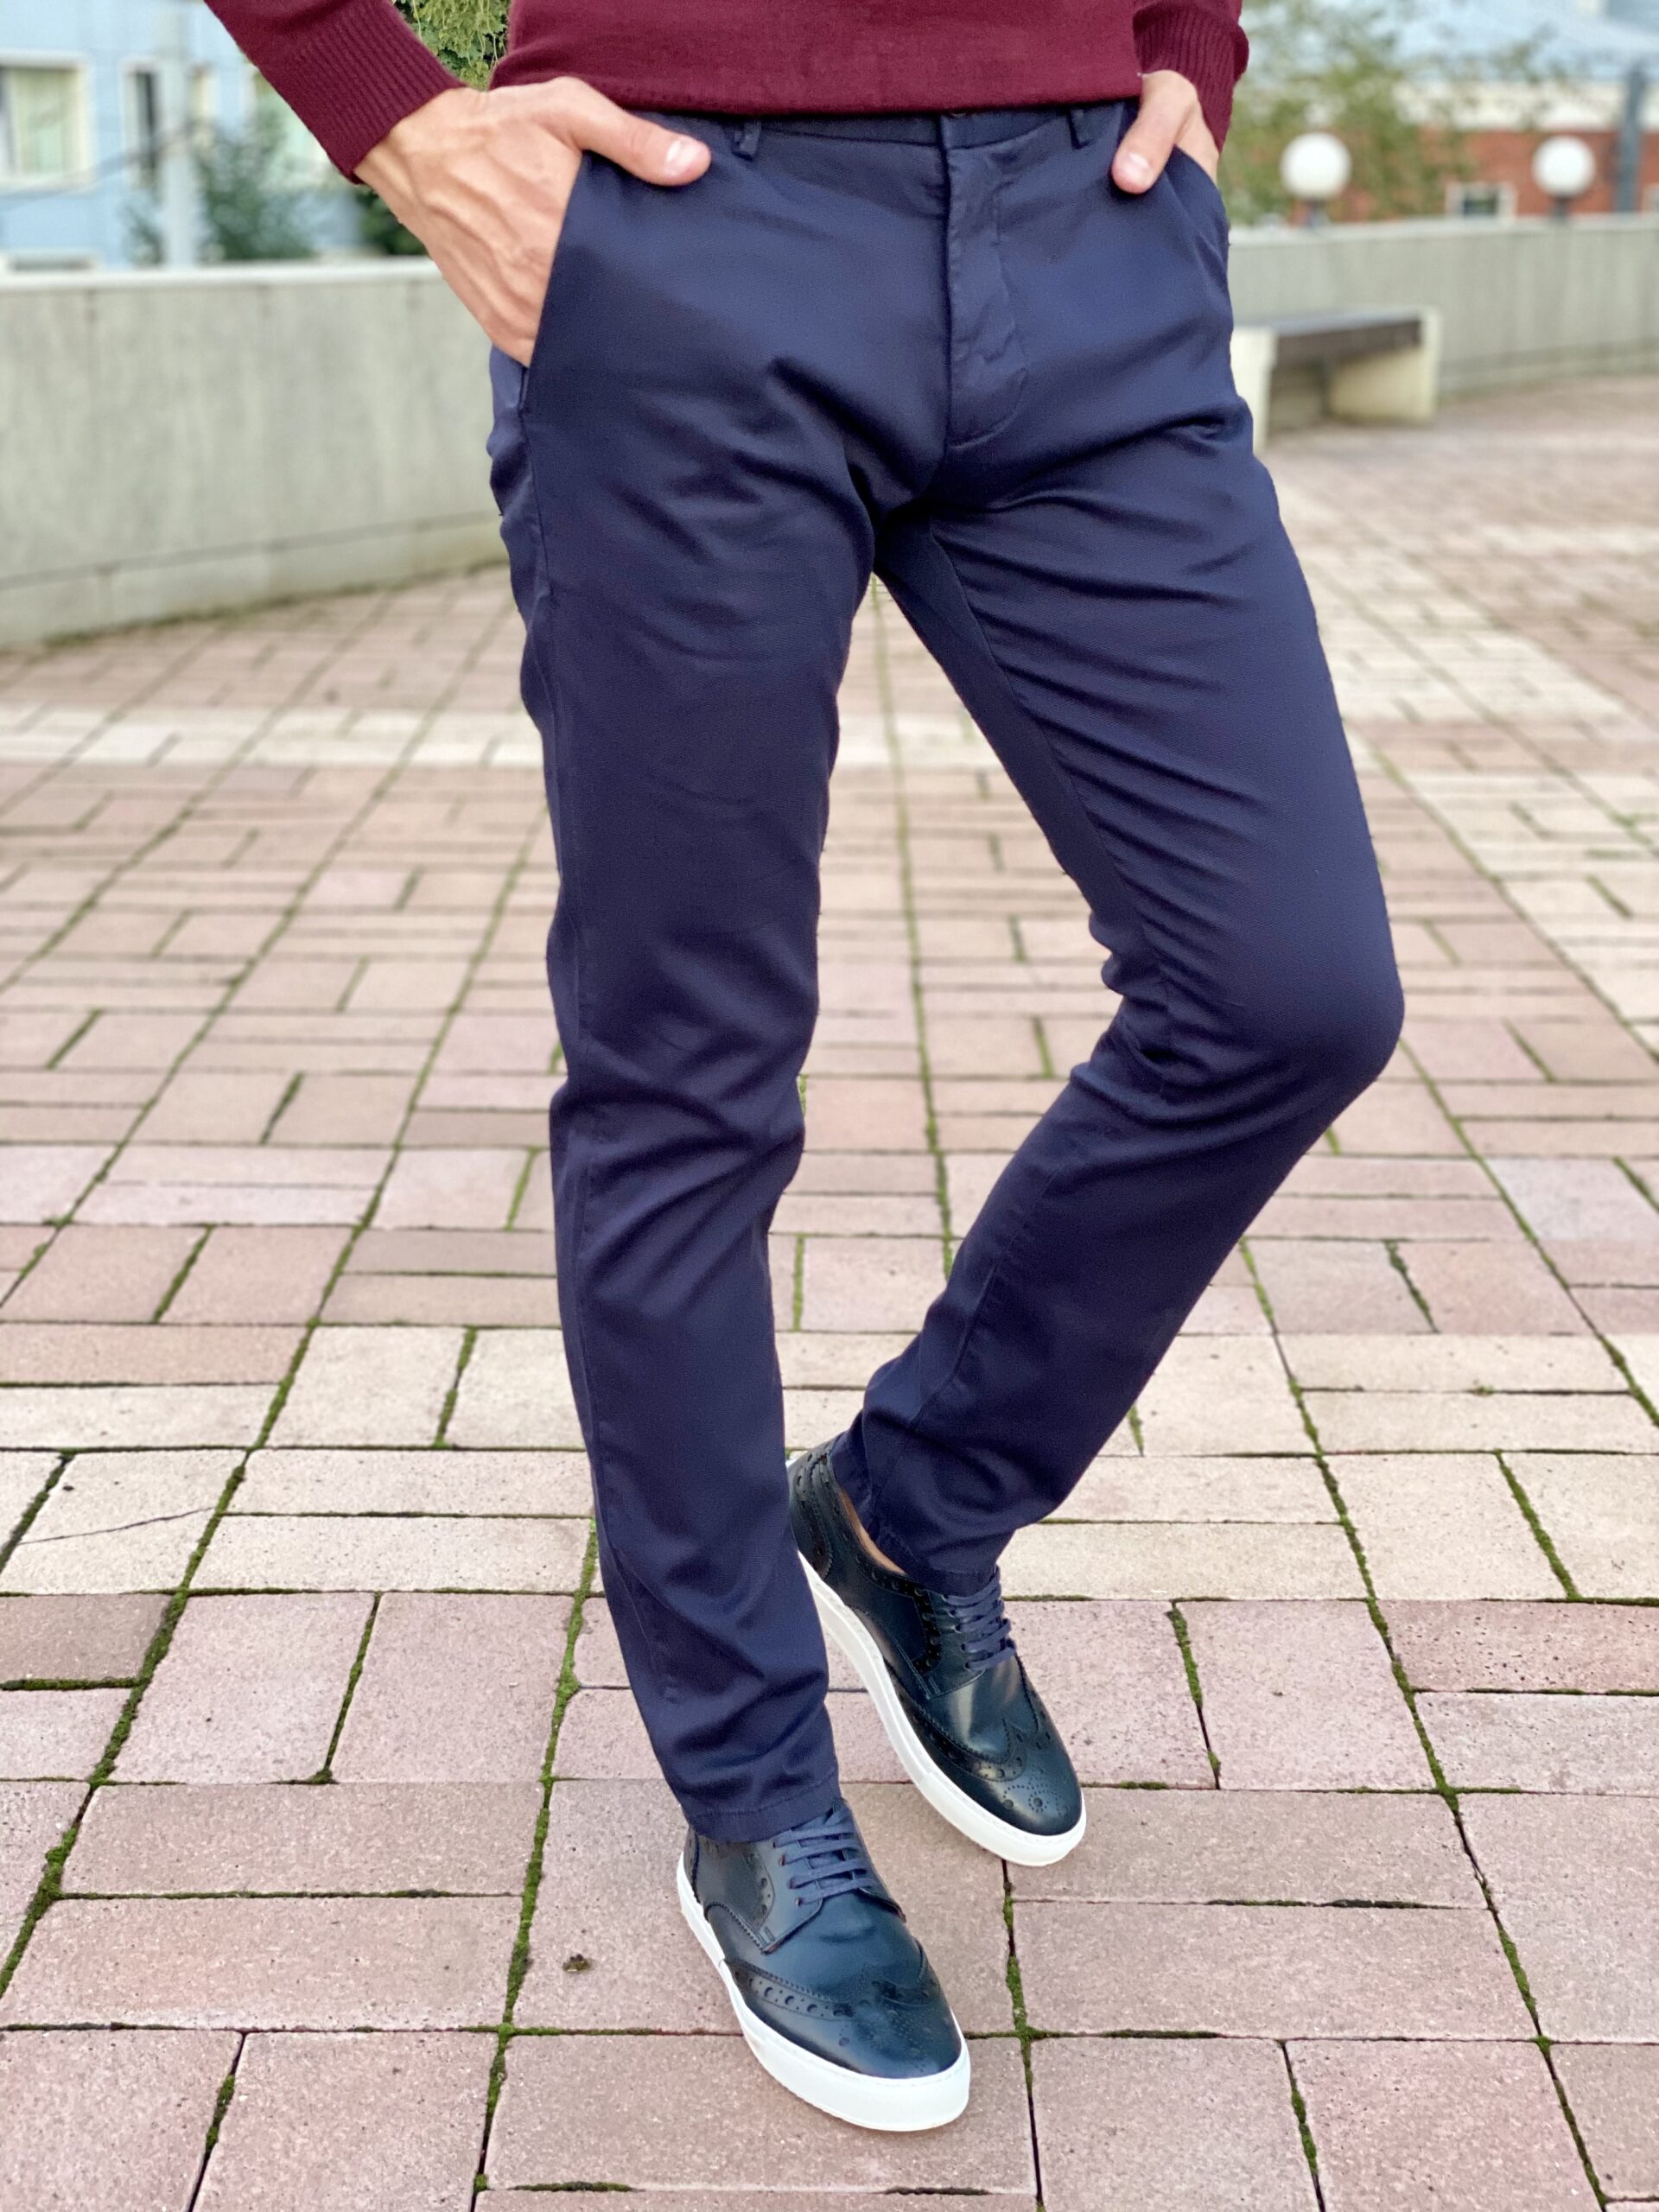 Мужские синие брюки. Арт.: 2663 – купить в магазине мужской одеждыSmartcasuals